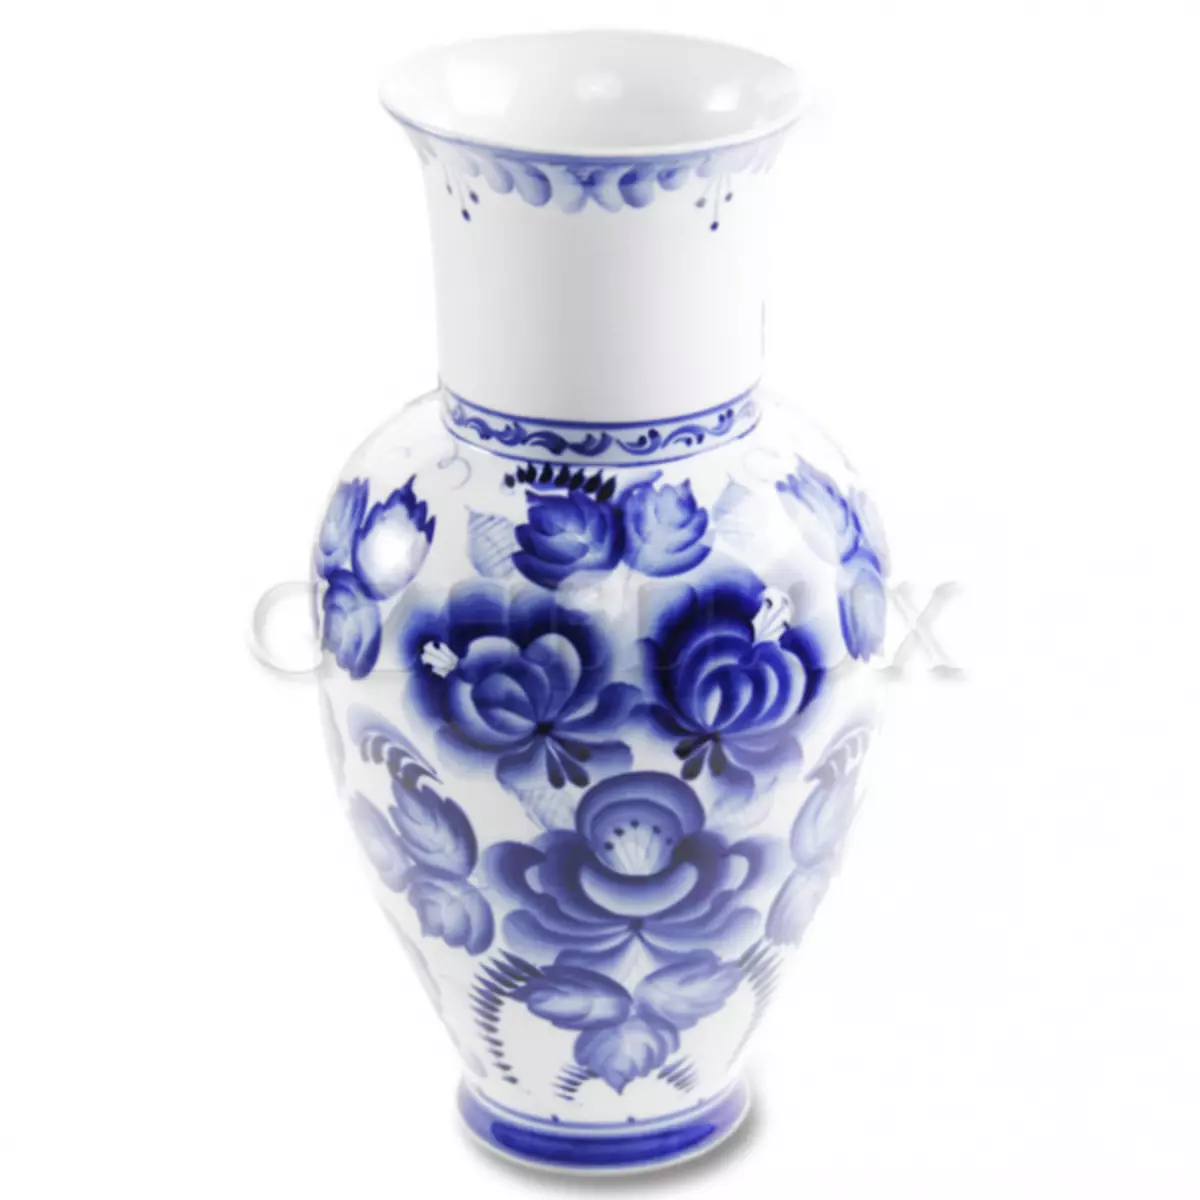 ວິທີການເຮັດ vase ຈາກ plasticine, ຂວດແລະທະນາຄານທີ່ມີມືຂອງຕົນເອງໃນໄລຍະ